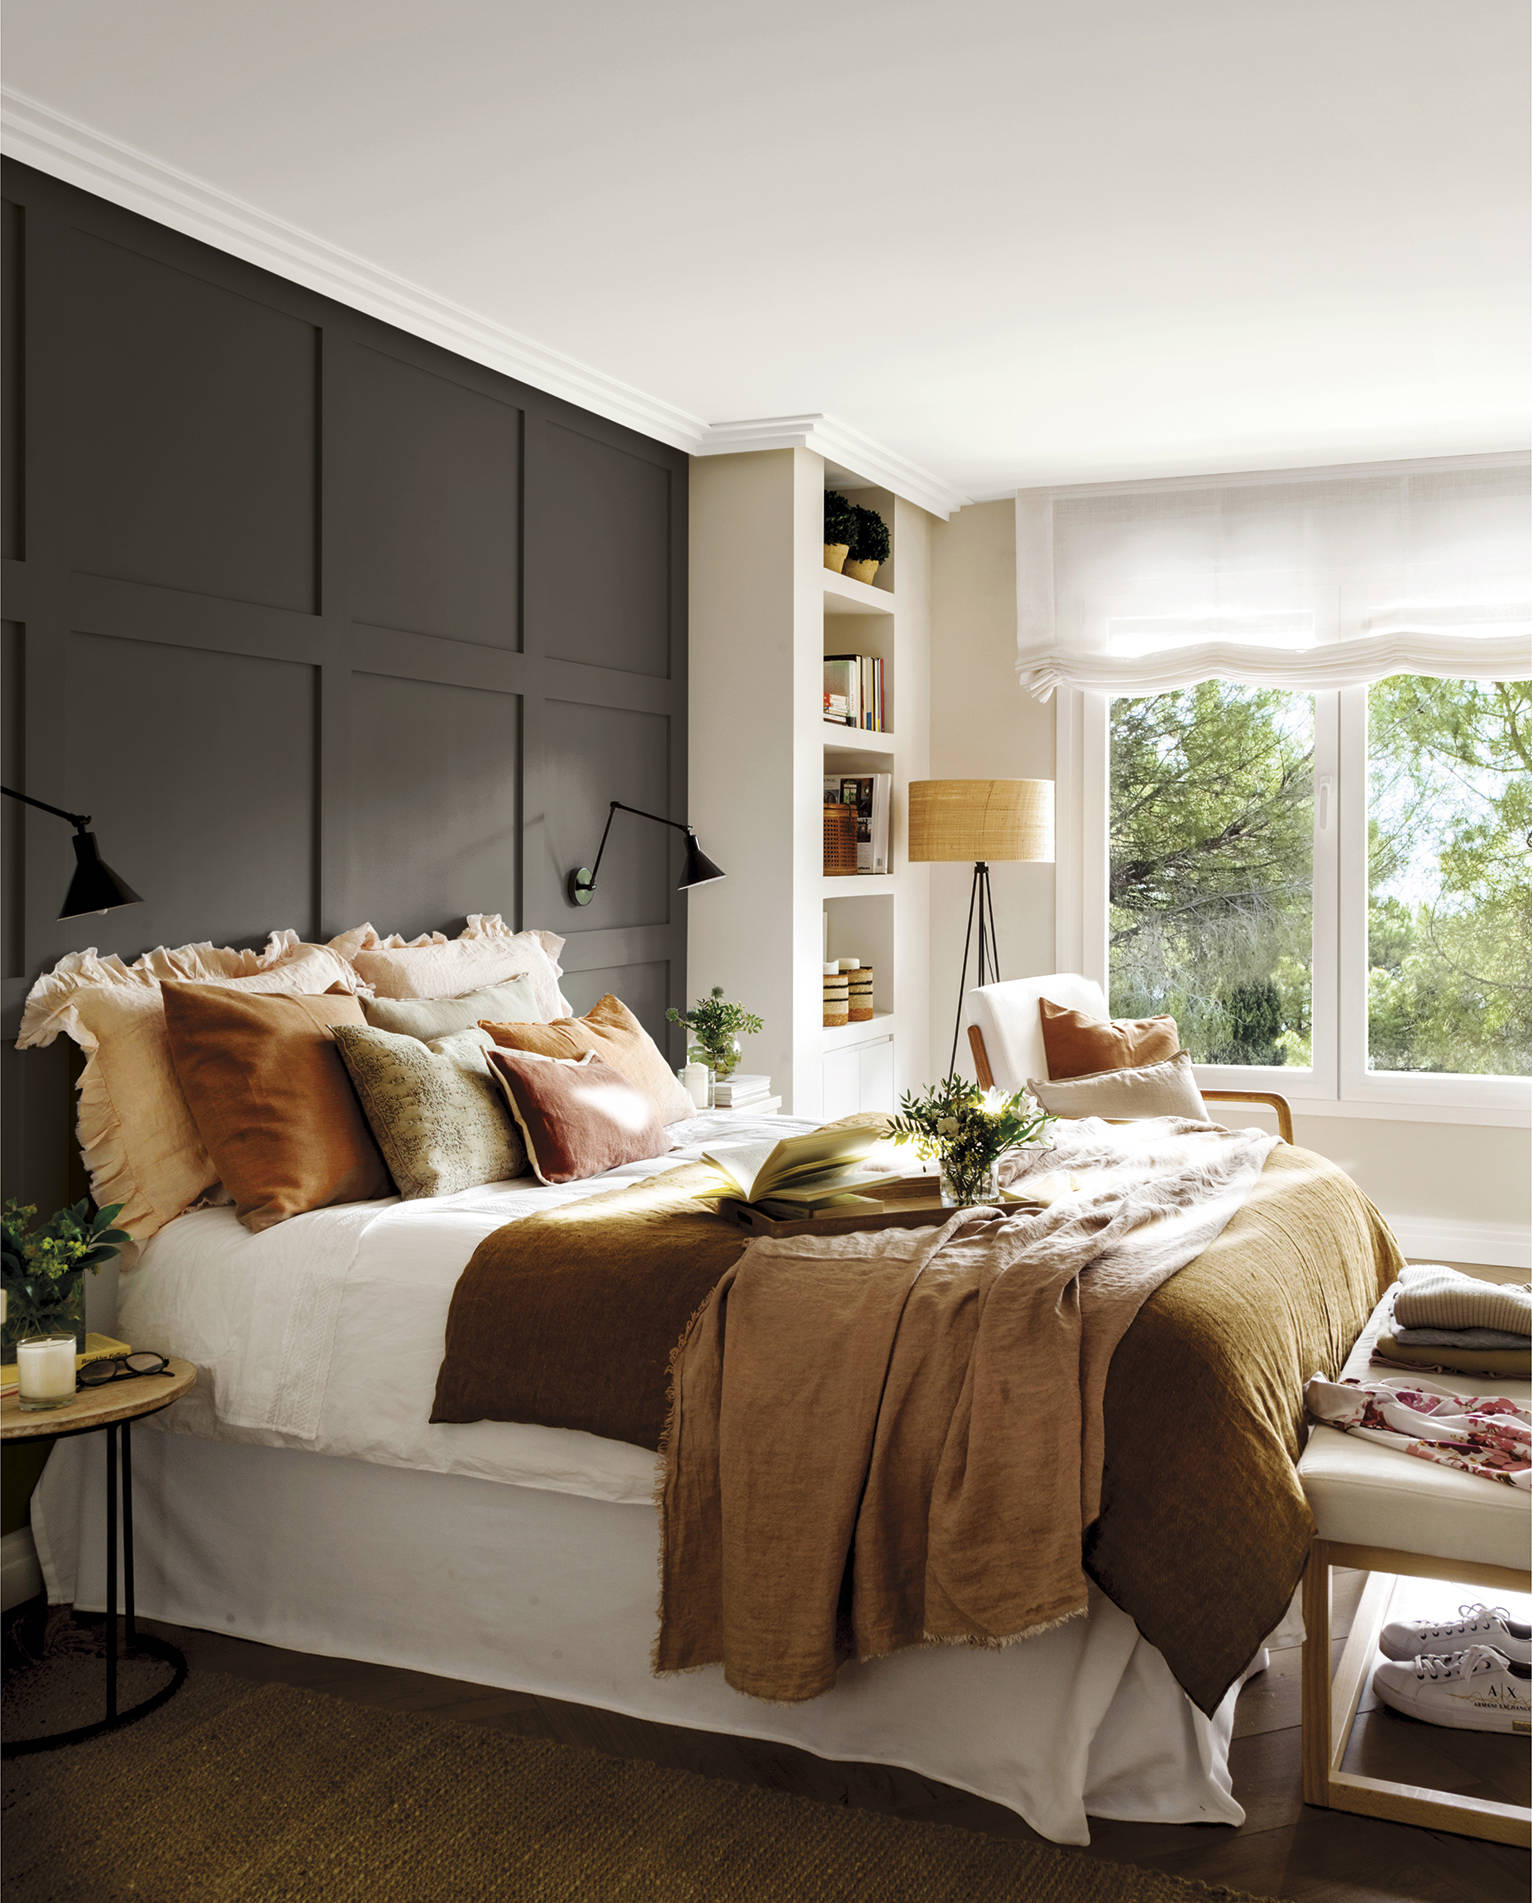 Dormitorio con cabecero de cuarterones de madera pintado en gris.